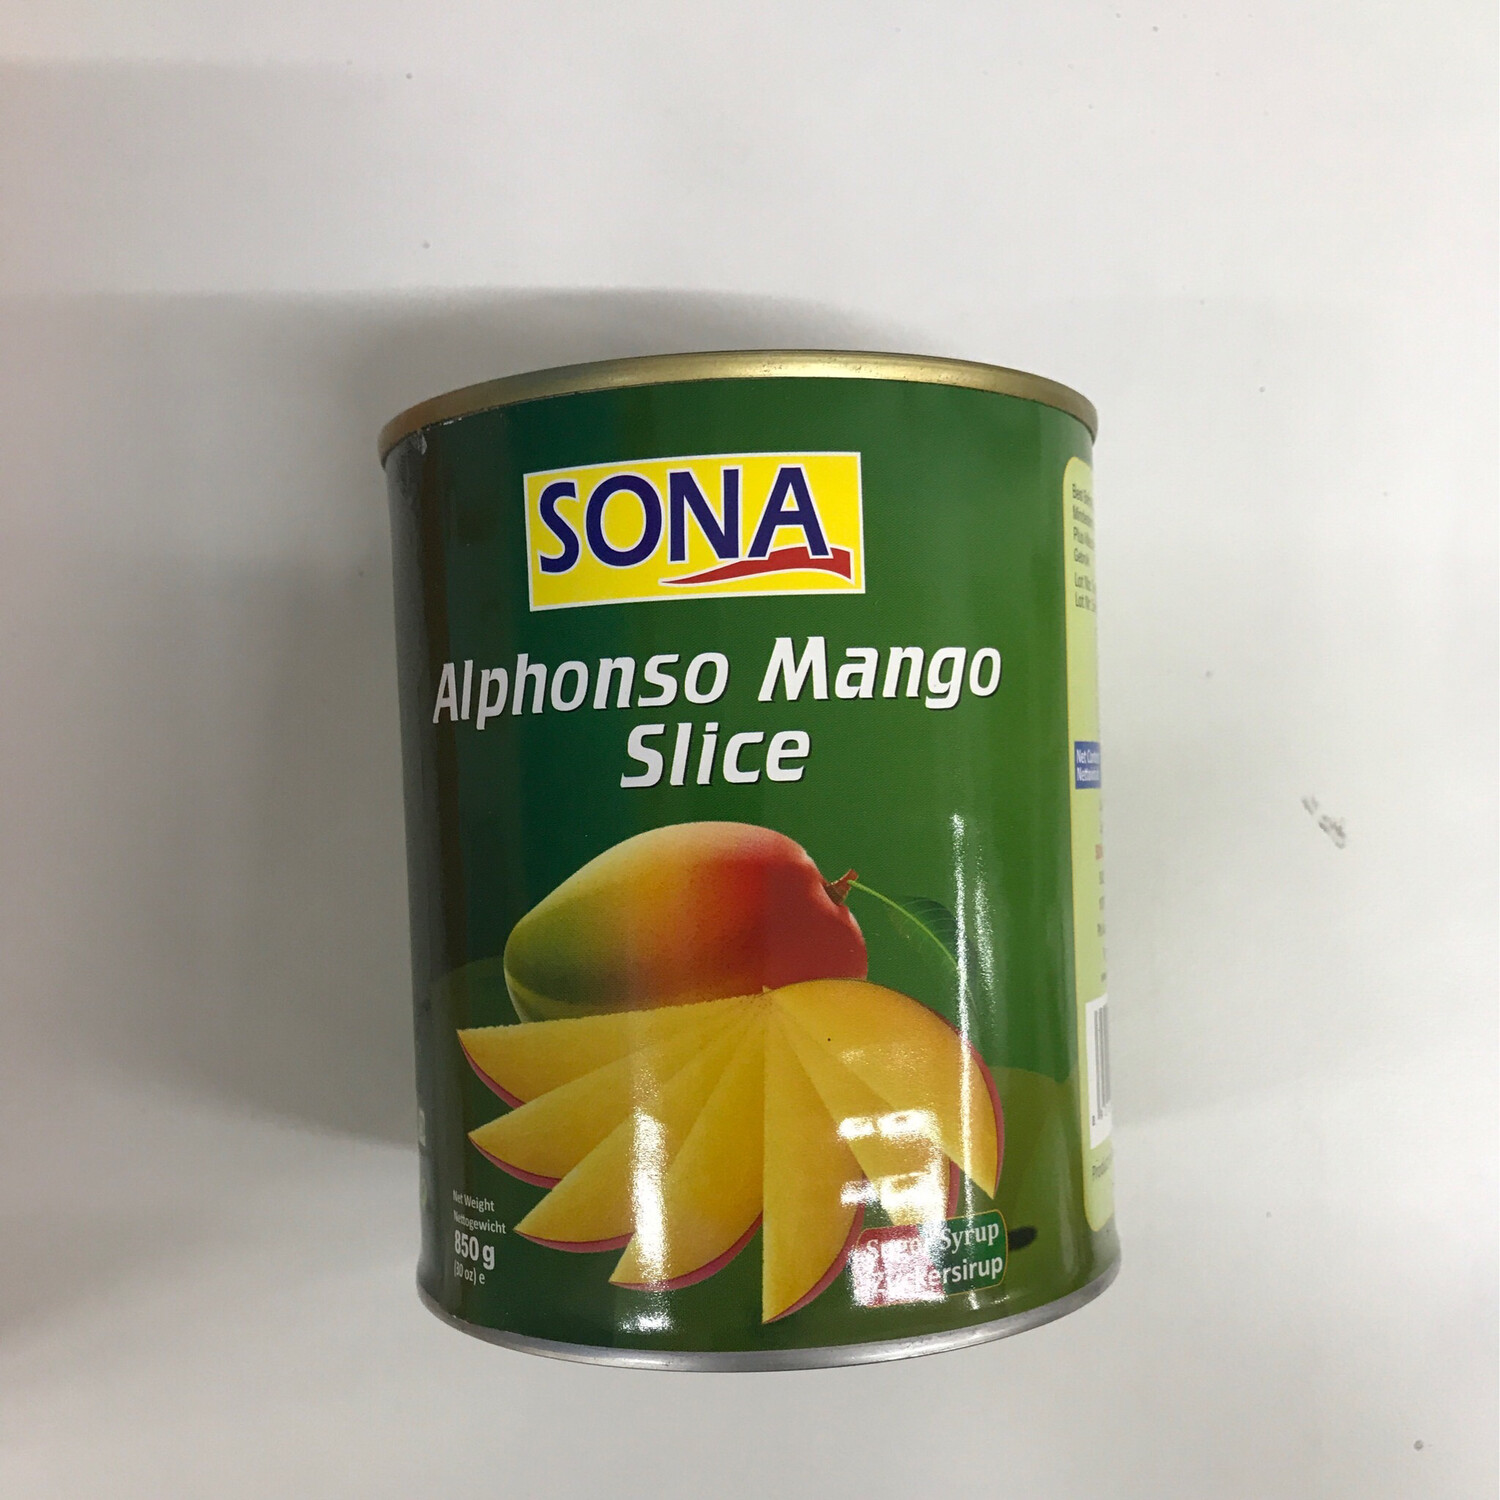 Sona Alphonso Mango Slice 850g